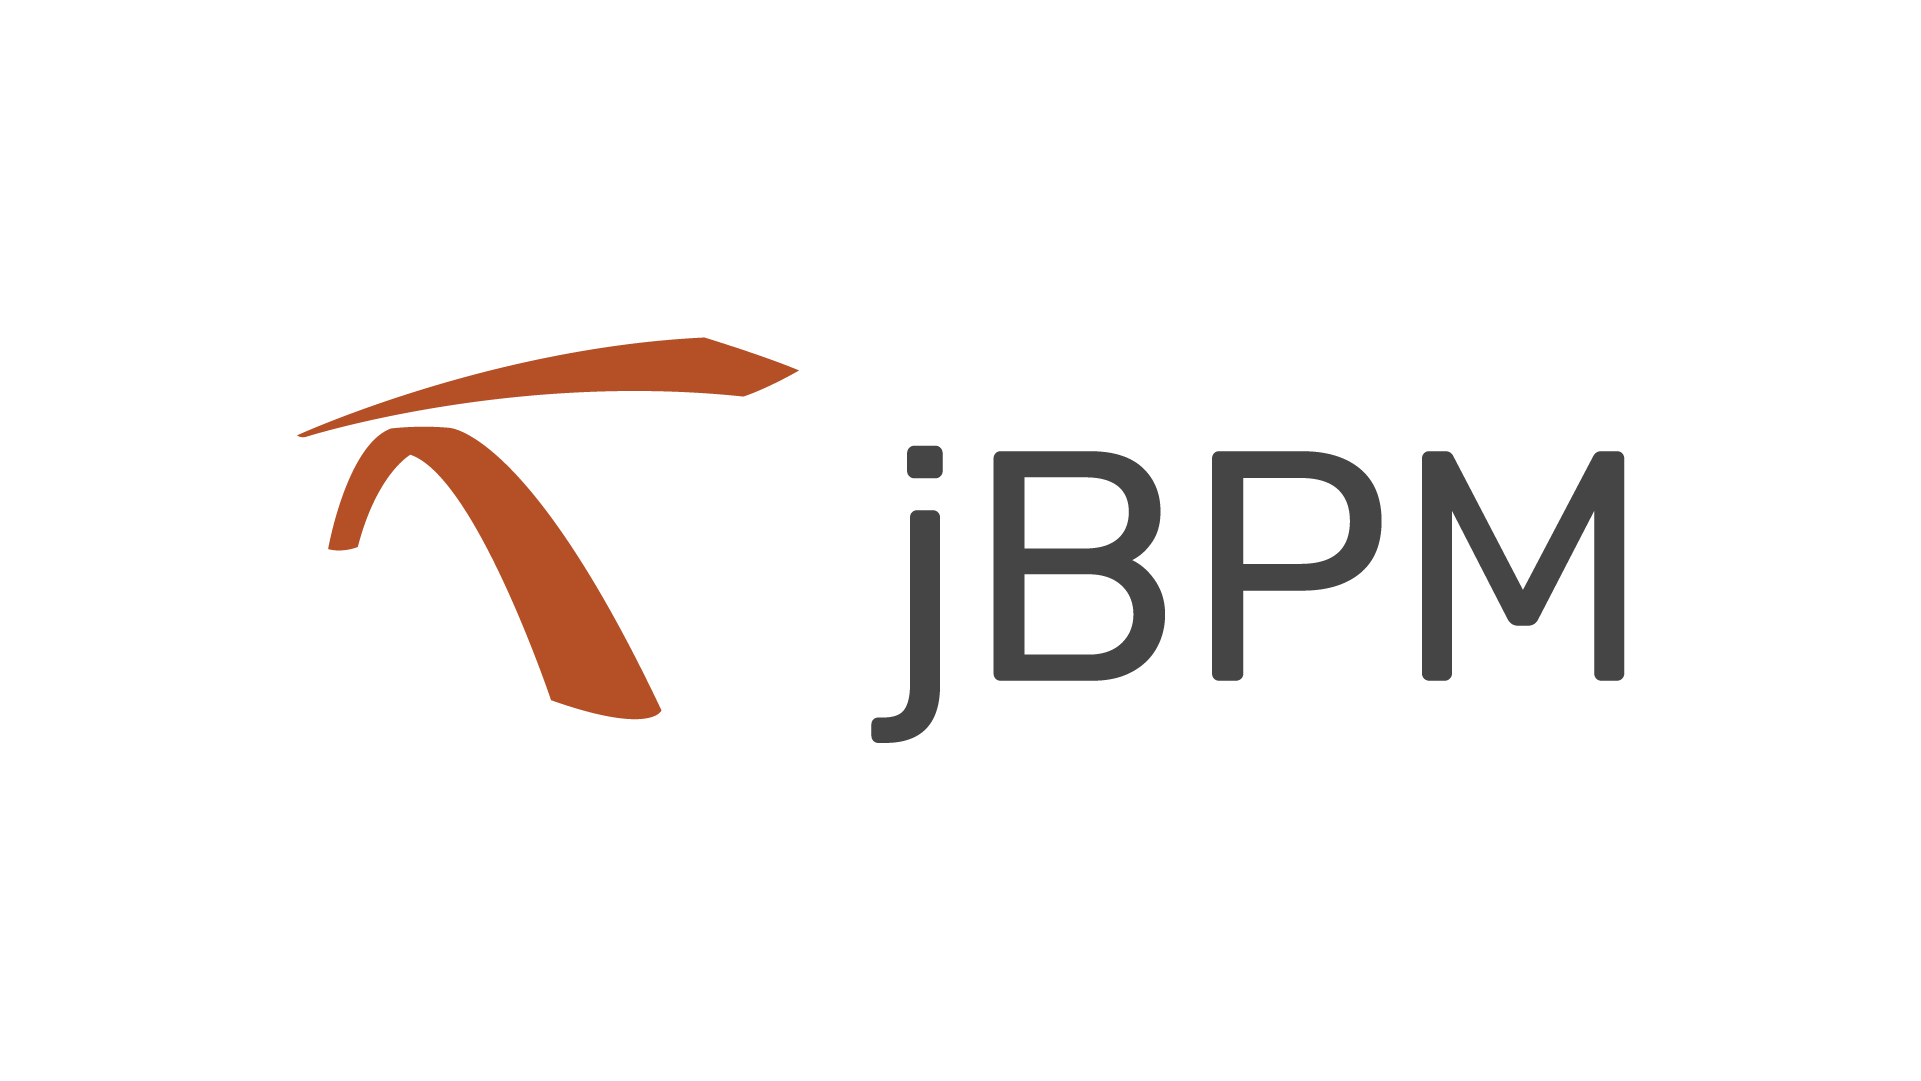 با نرم افزار Jbpm و کاربردهای آن آشنا شویم